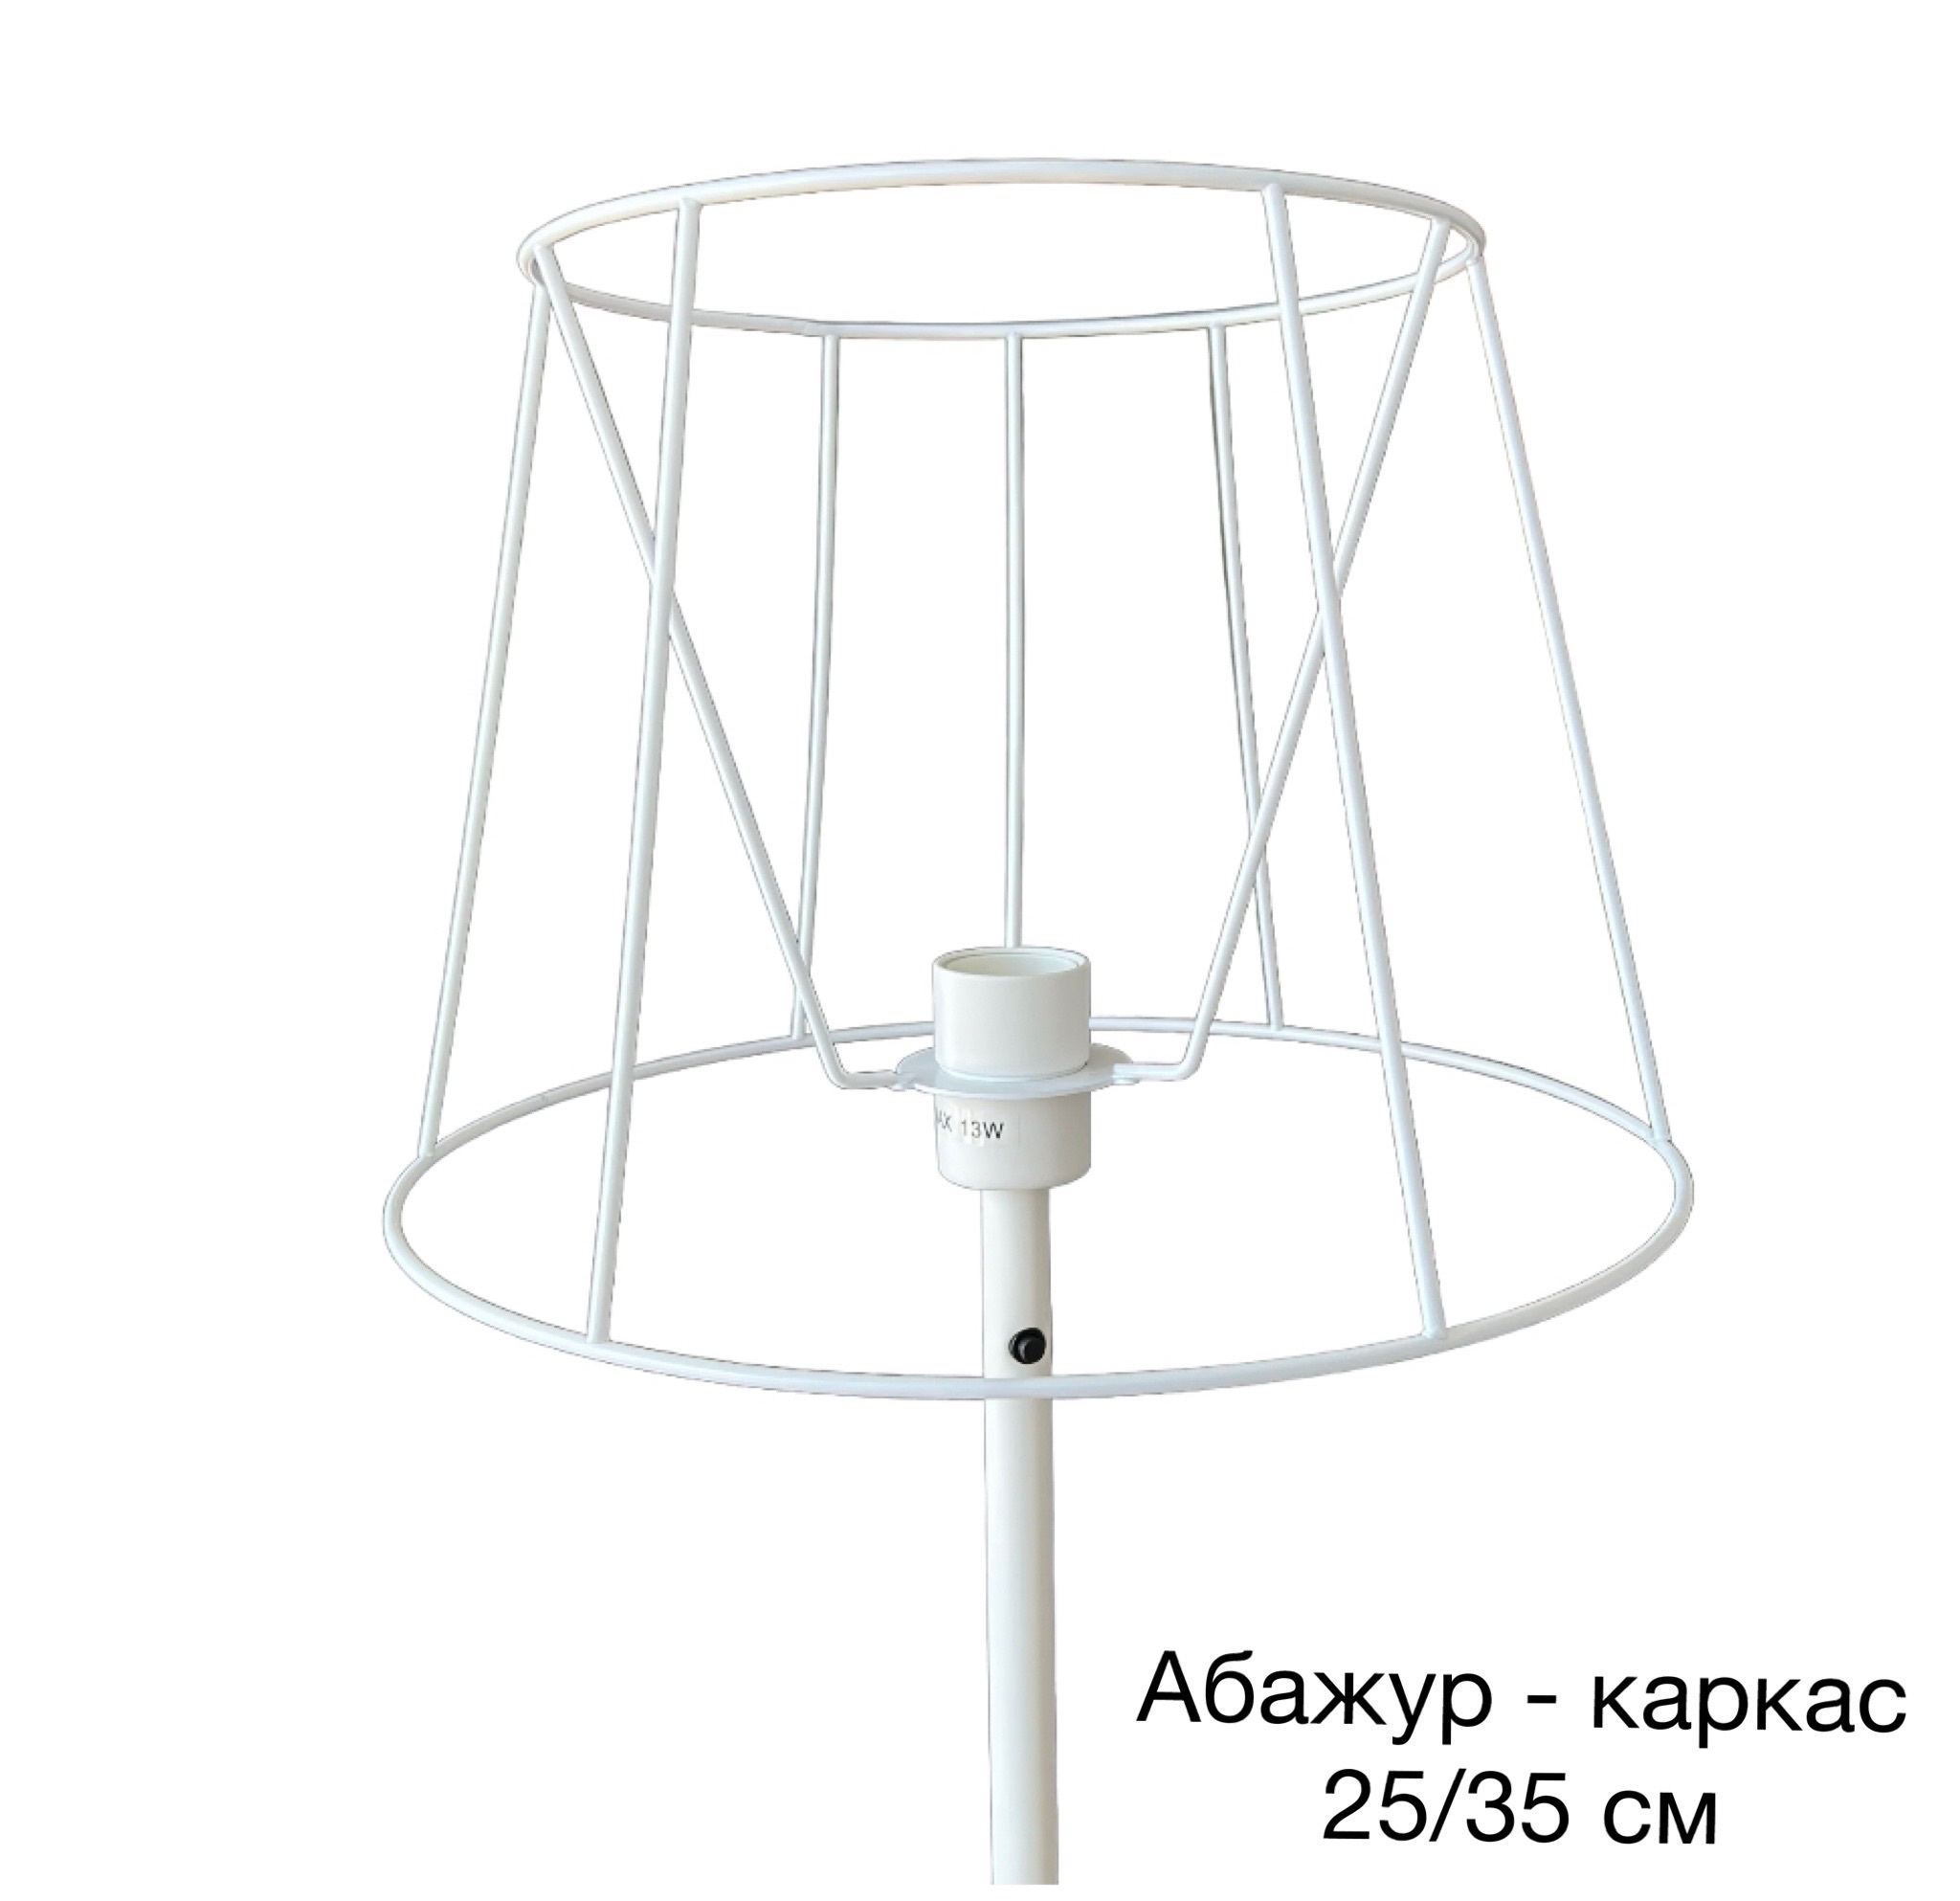 Абажур для светильников белый купить в Минске: цена, фото